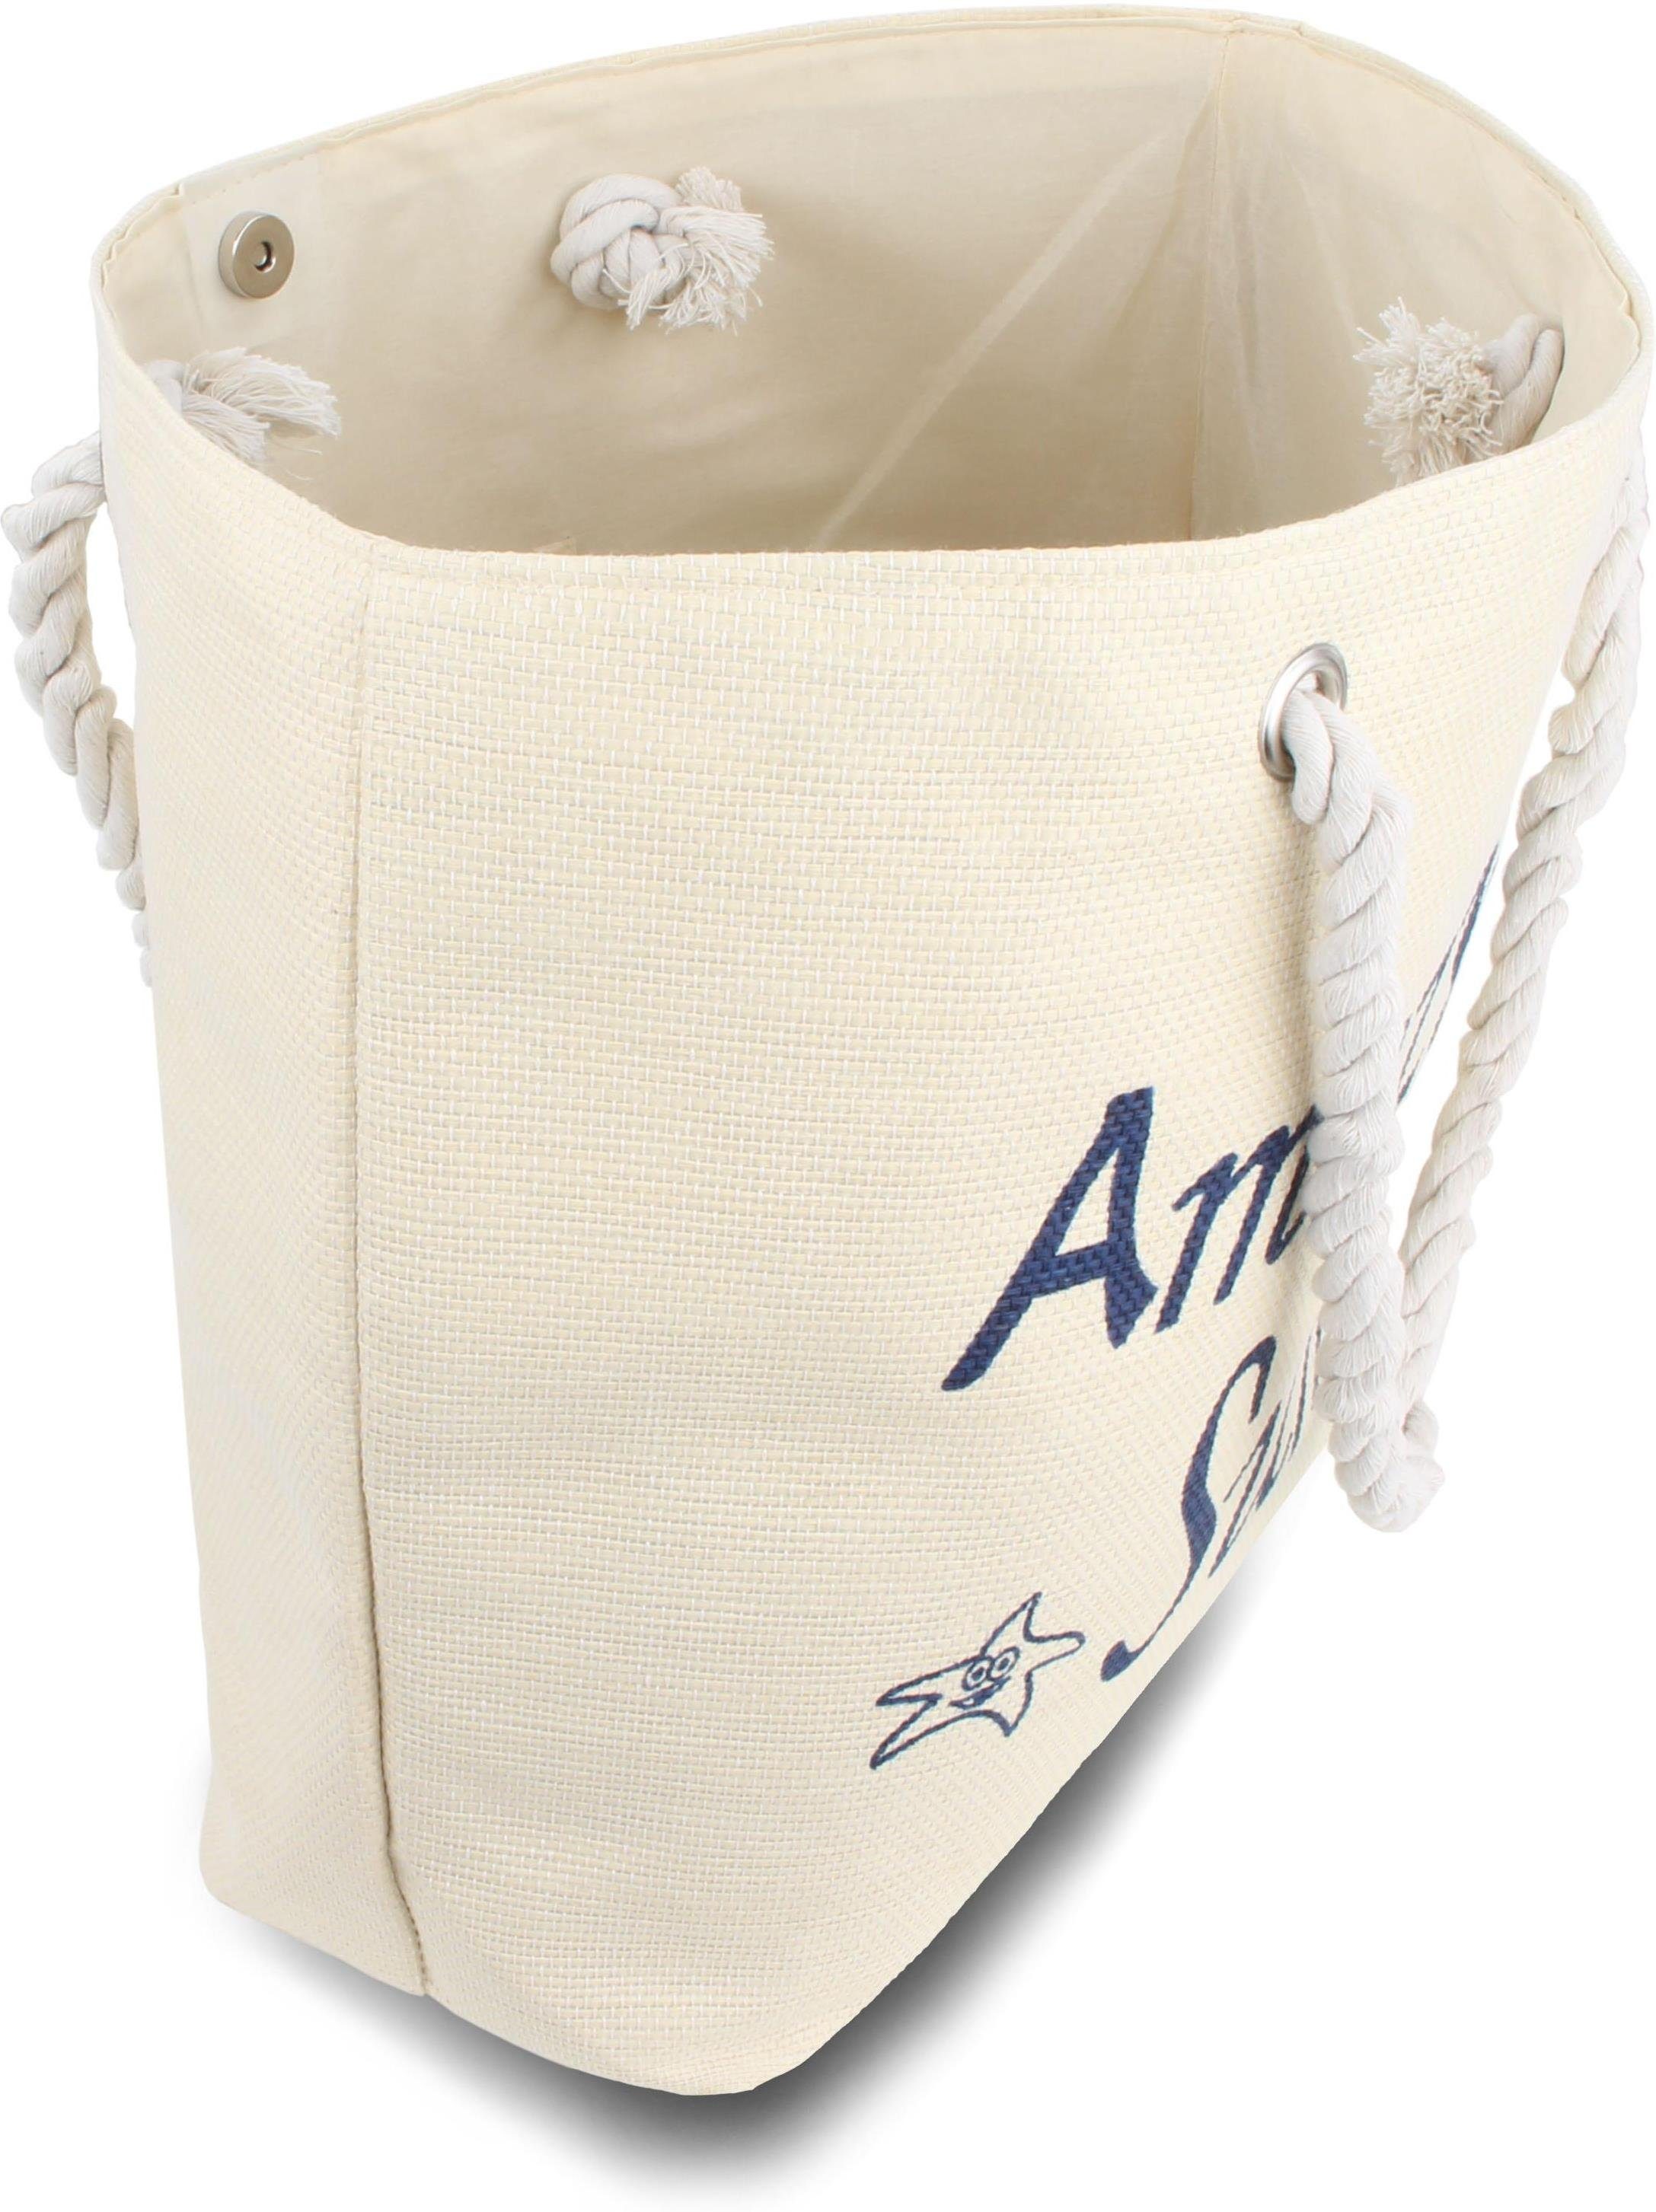 Schultertasche normani Sommer-Umhängetasche, Amazing als White Summer Strandtasche tragbar Henkeltasche Strandtasche, Bequeme